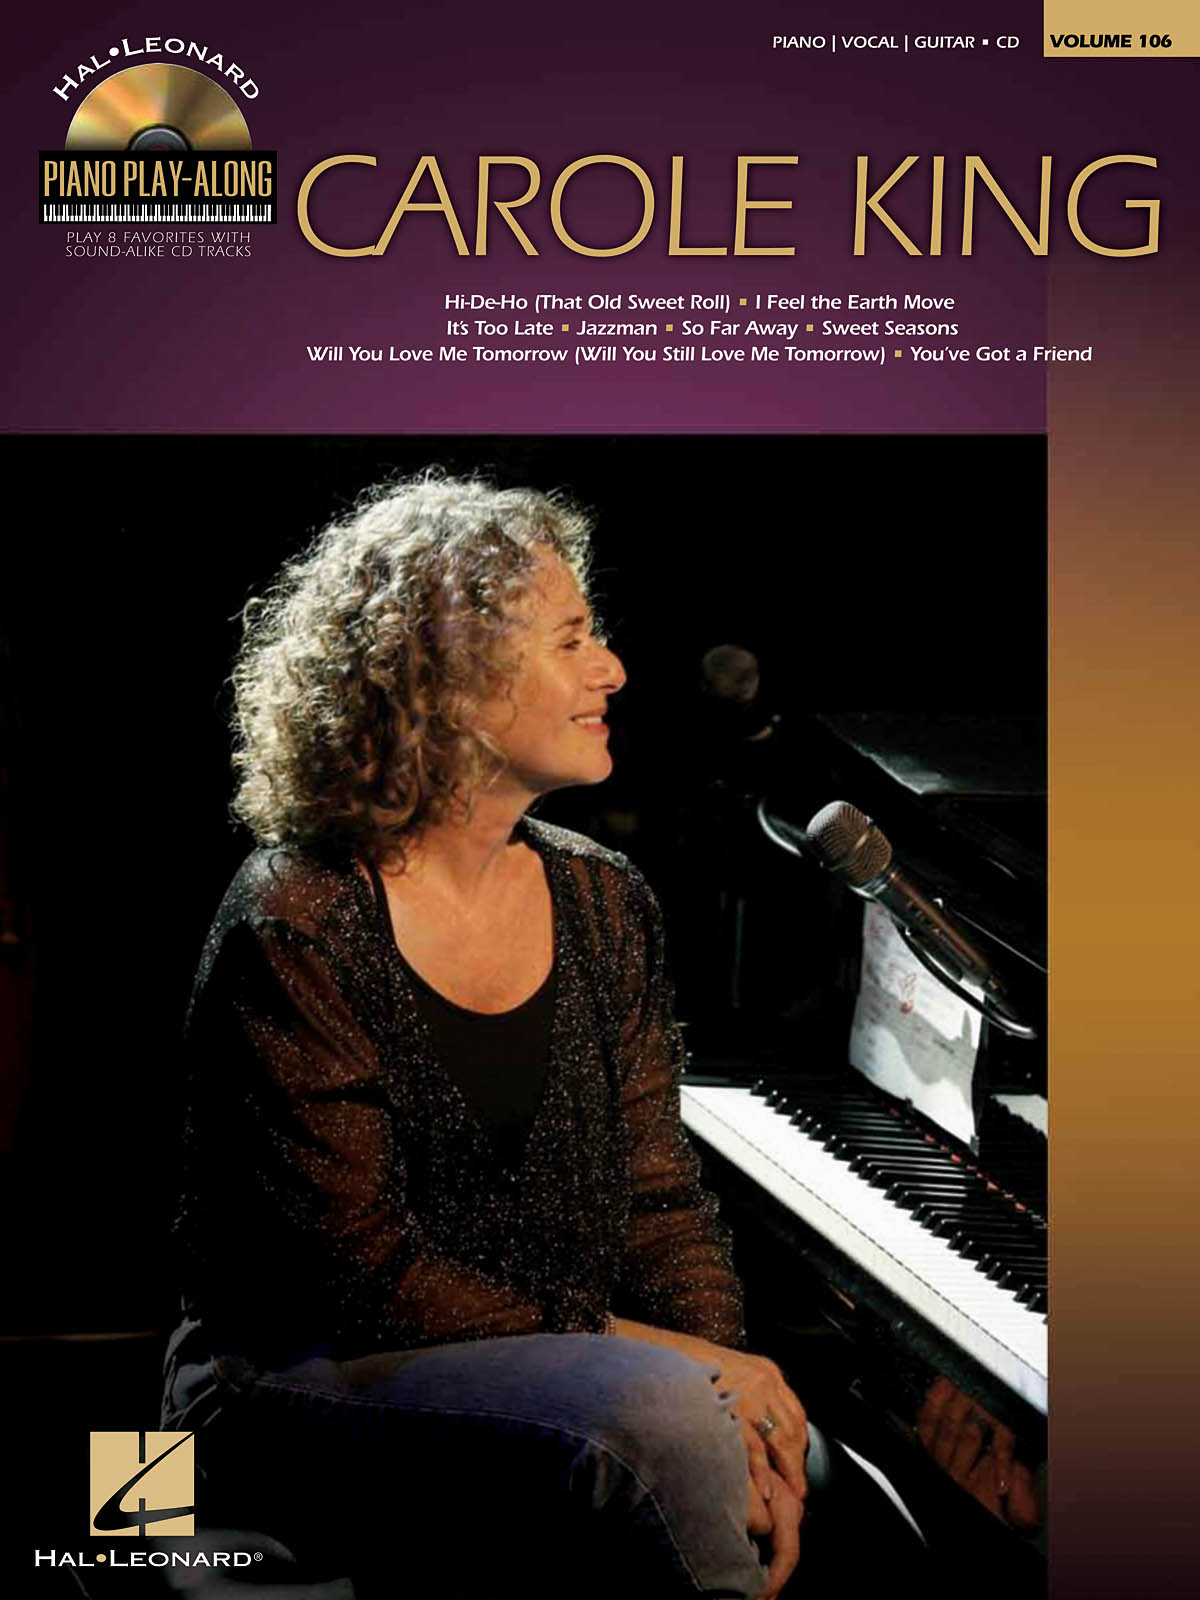 Carole King - Piano Play-Along Volume 106 známé písně pro klavír